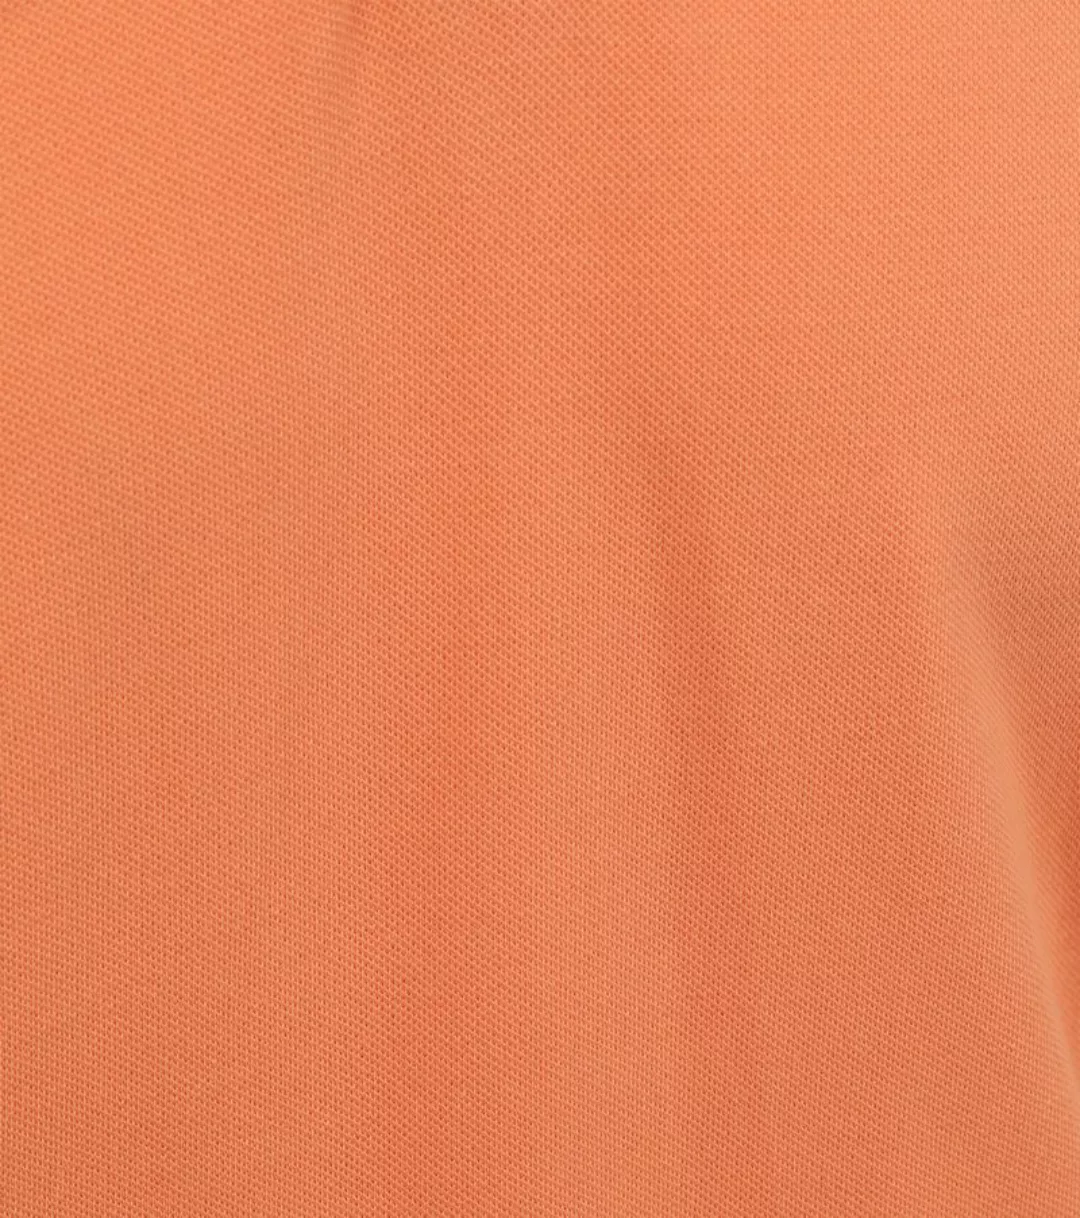 Suitable Kick Poloshirt Orange - Größe 3XL günstig online kaufen